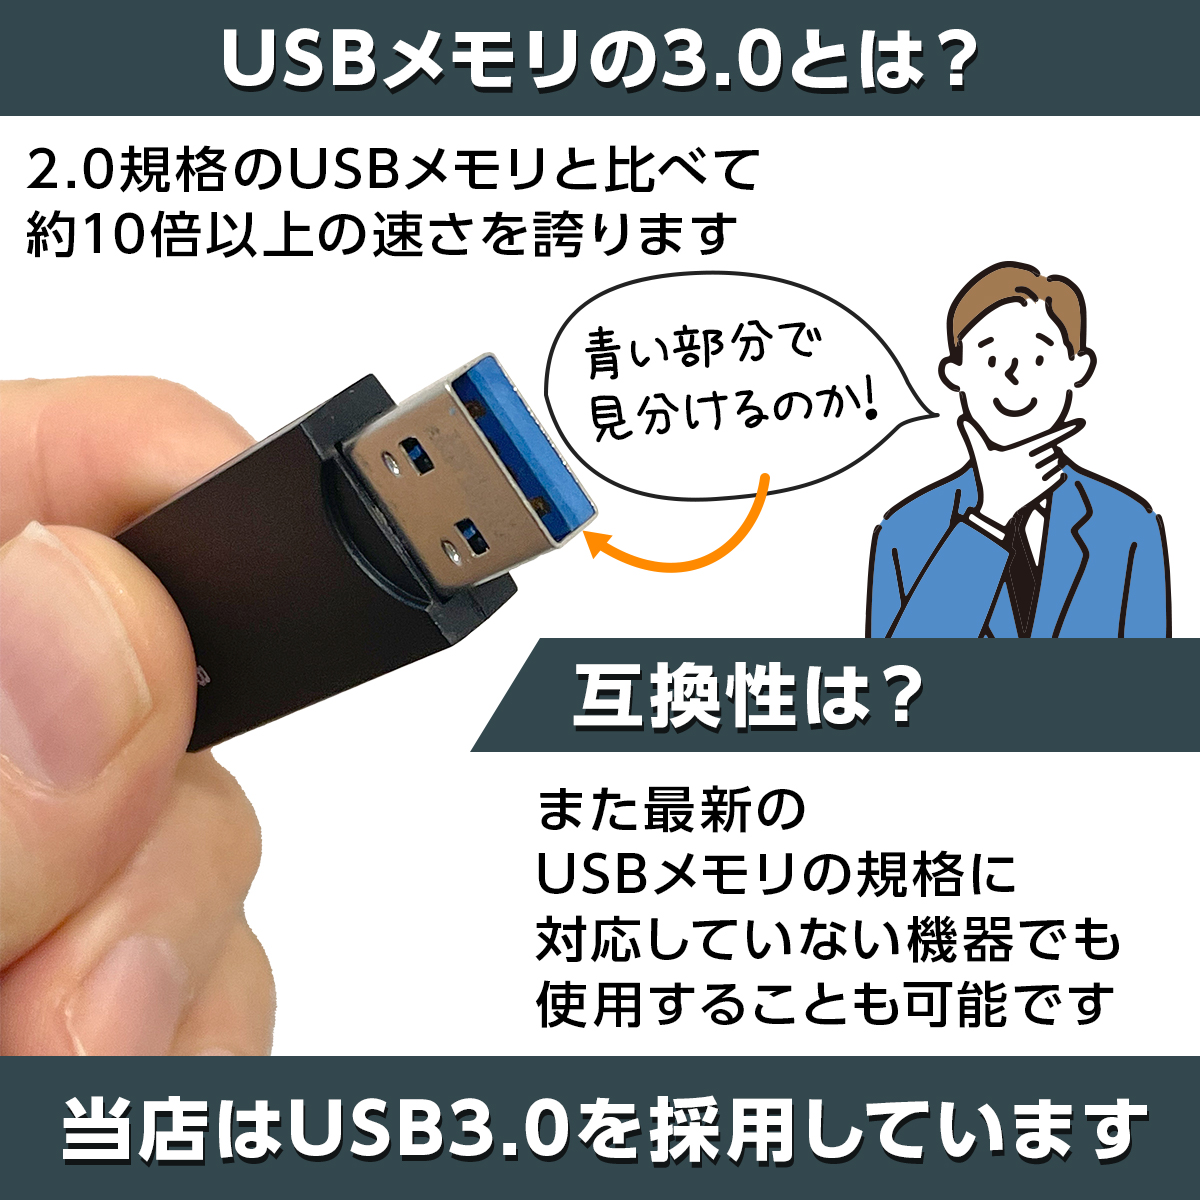 USBメモリ Usbフラッシュメモリ Usb3.0 64gb 高速 容量 おすすめ 小型 メモリースティック 1年保証 送料無料 USBメモリ 